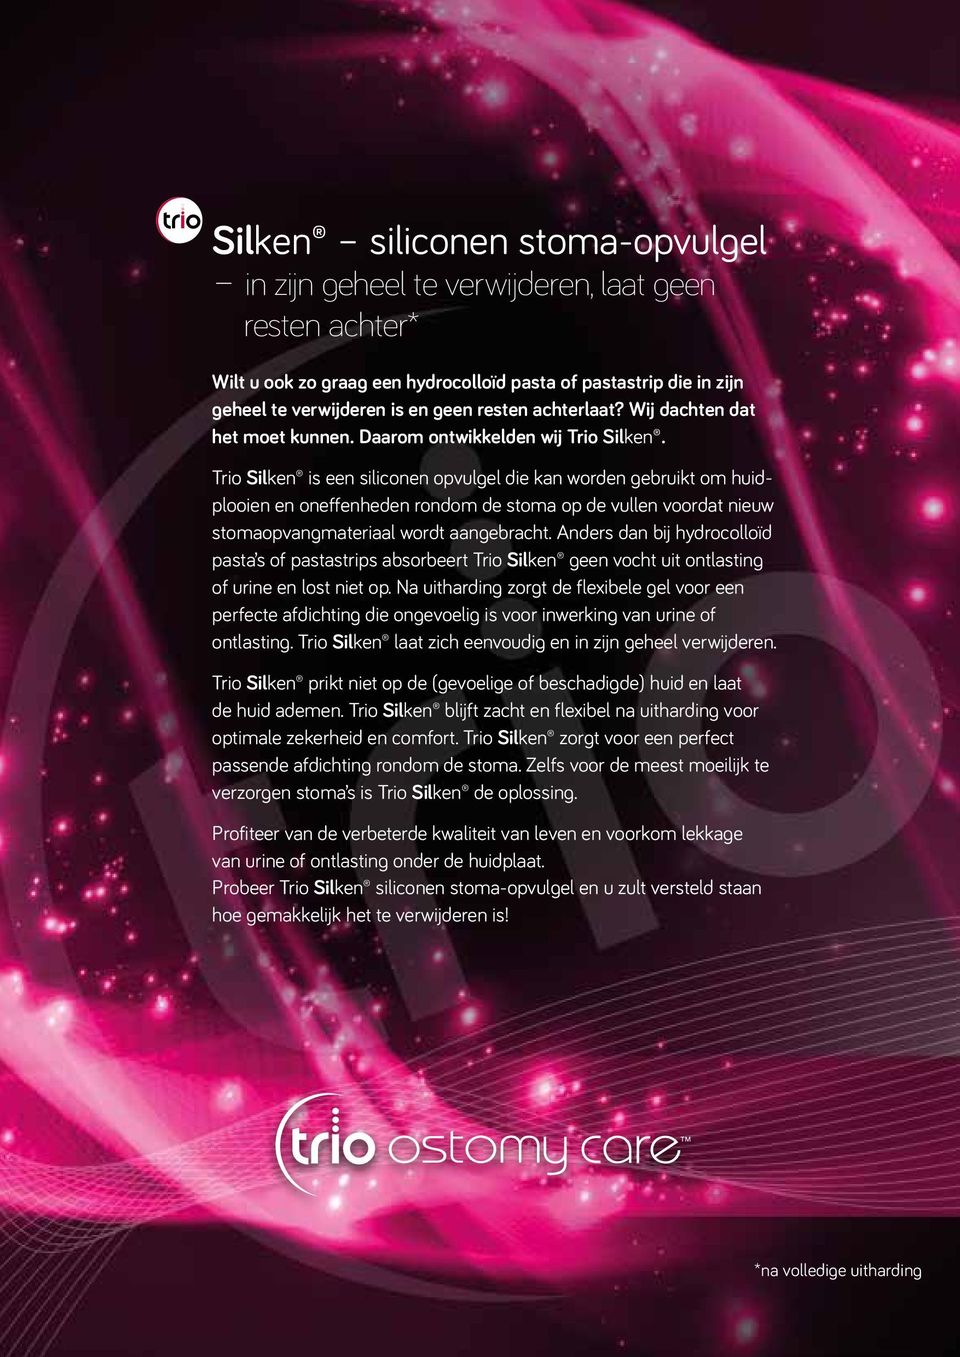 Trio Silken is een siliconen opvulgel die kan worden gebruikt om huidplooien en oneffenheden rondom de stoma op de vullen voordat nieuw stomaopvangmateriaal wordt aangebracht.